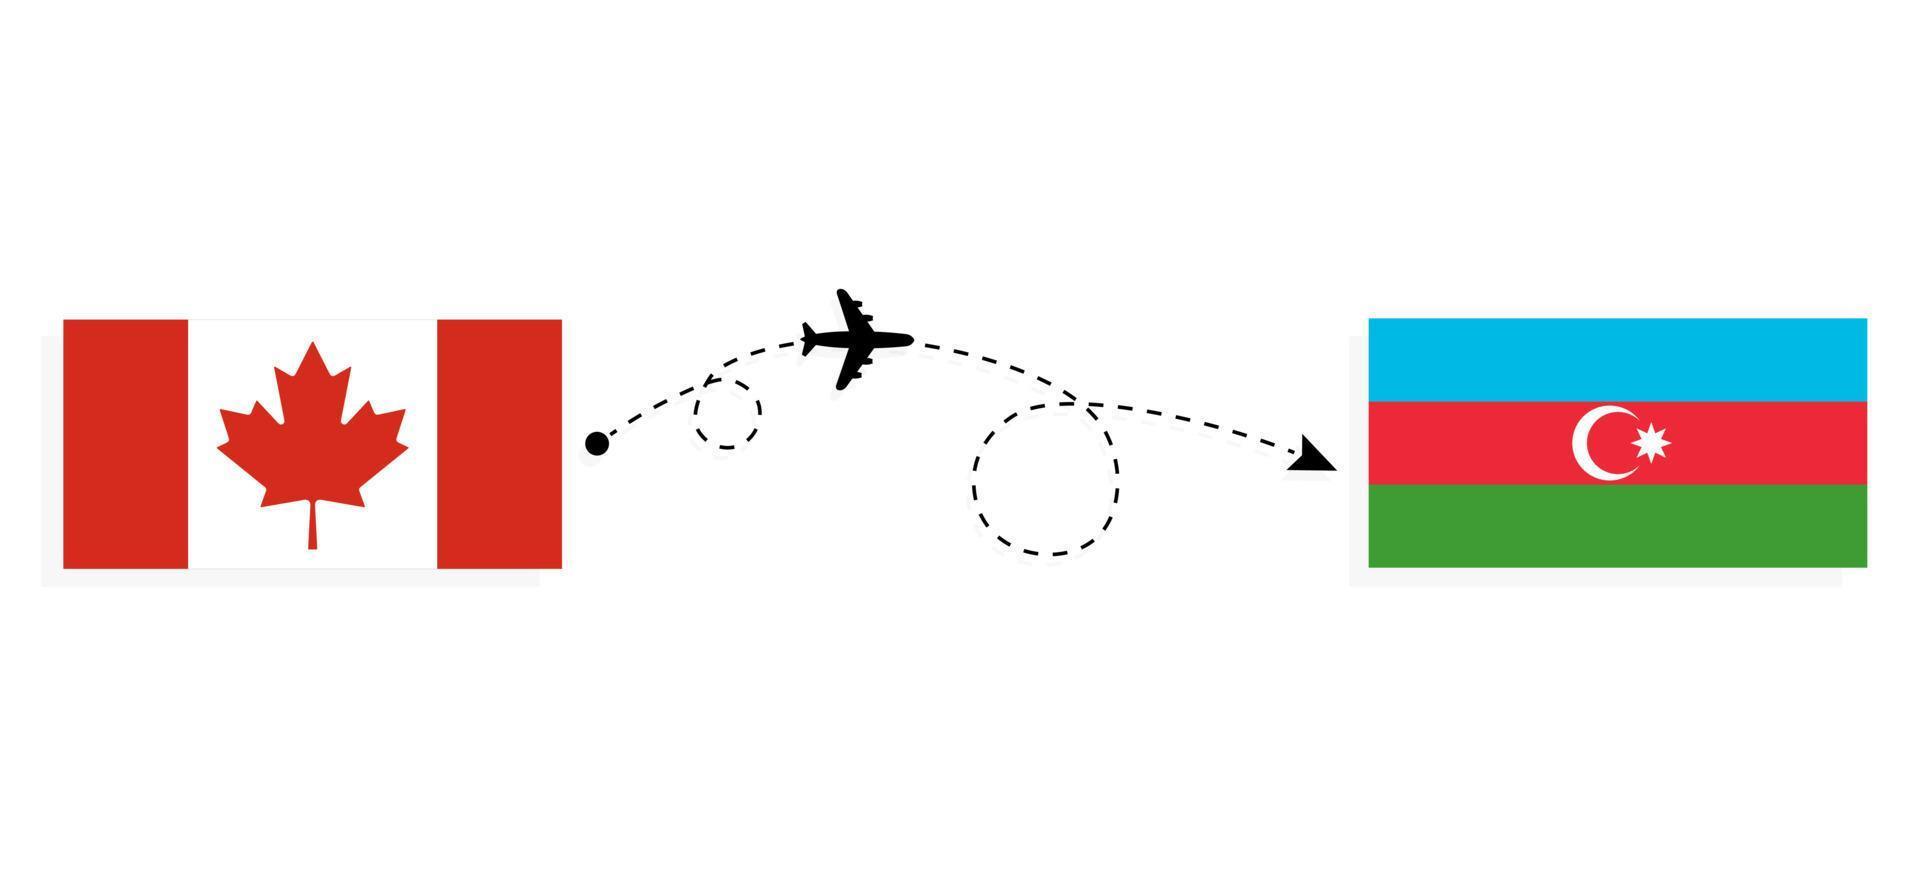 flyg och resor från Kanada till Azerbajdzjan med resekoncept för passagerarflygplan vektor